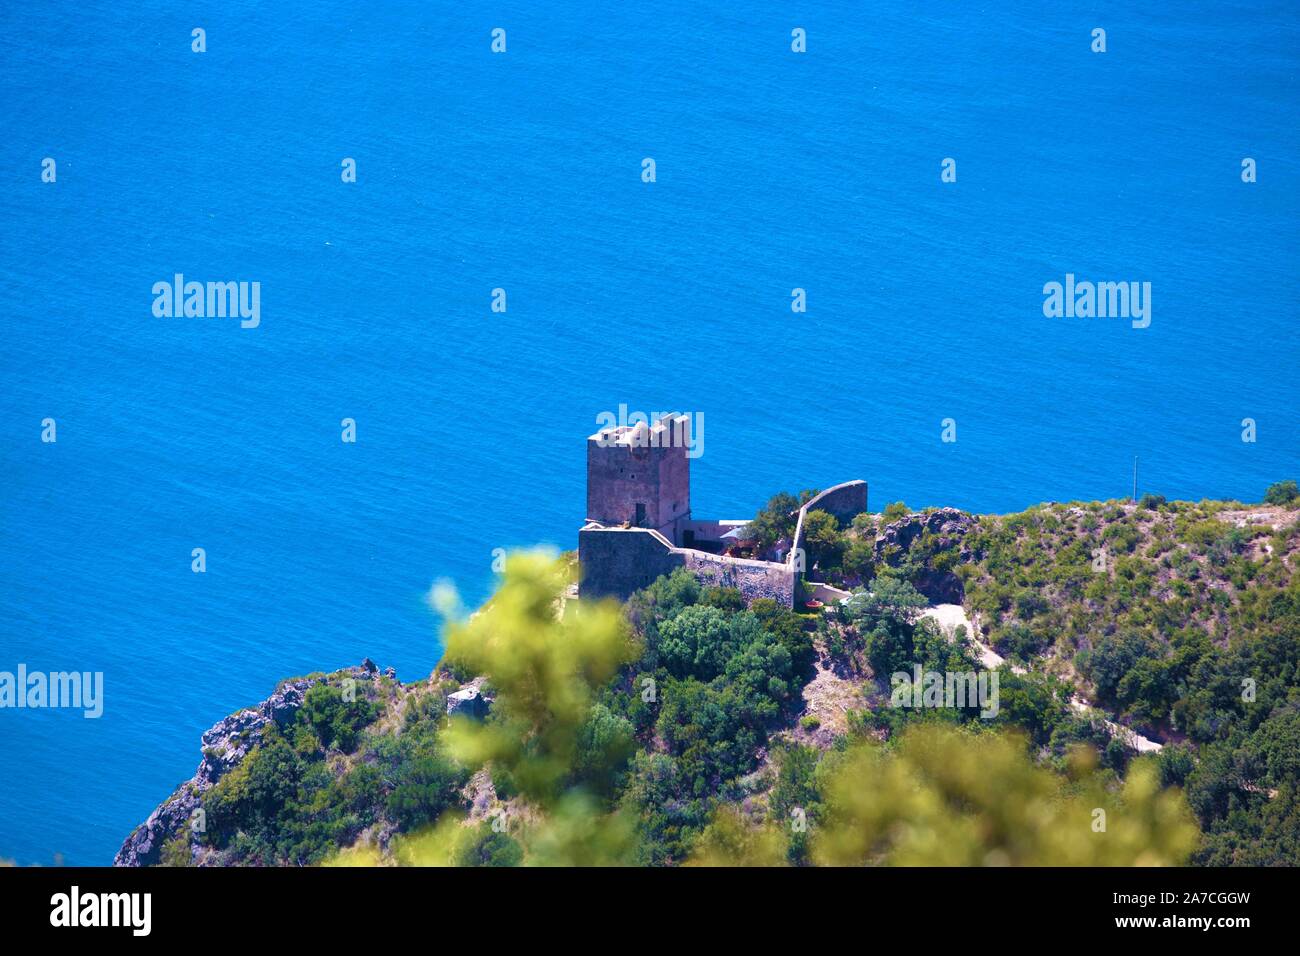 Blick von der im Thyrrenischen Meer liegenden Halbinsel Monte Argentario über Olivenbäume, Zypressen, Mohnblumen auf das Mittelmeer vor der Toskana. D Stock Photo